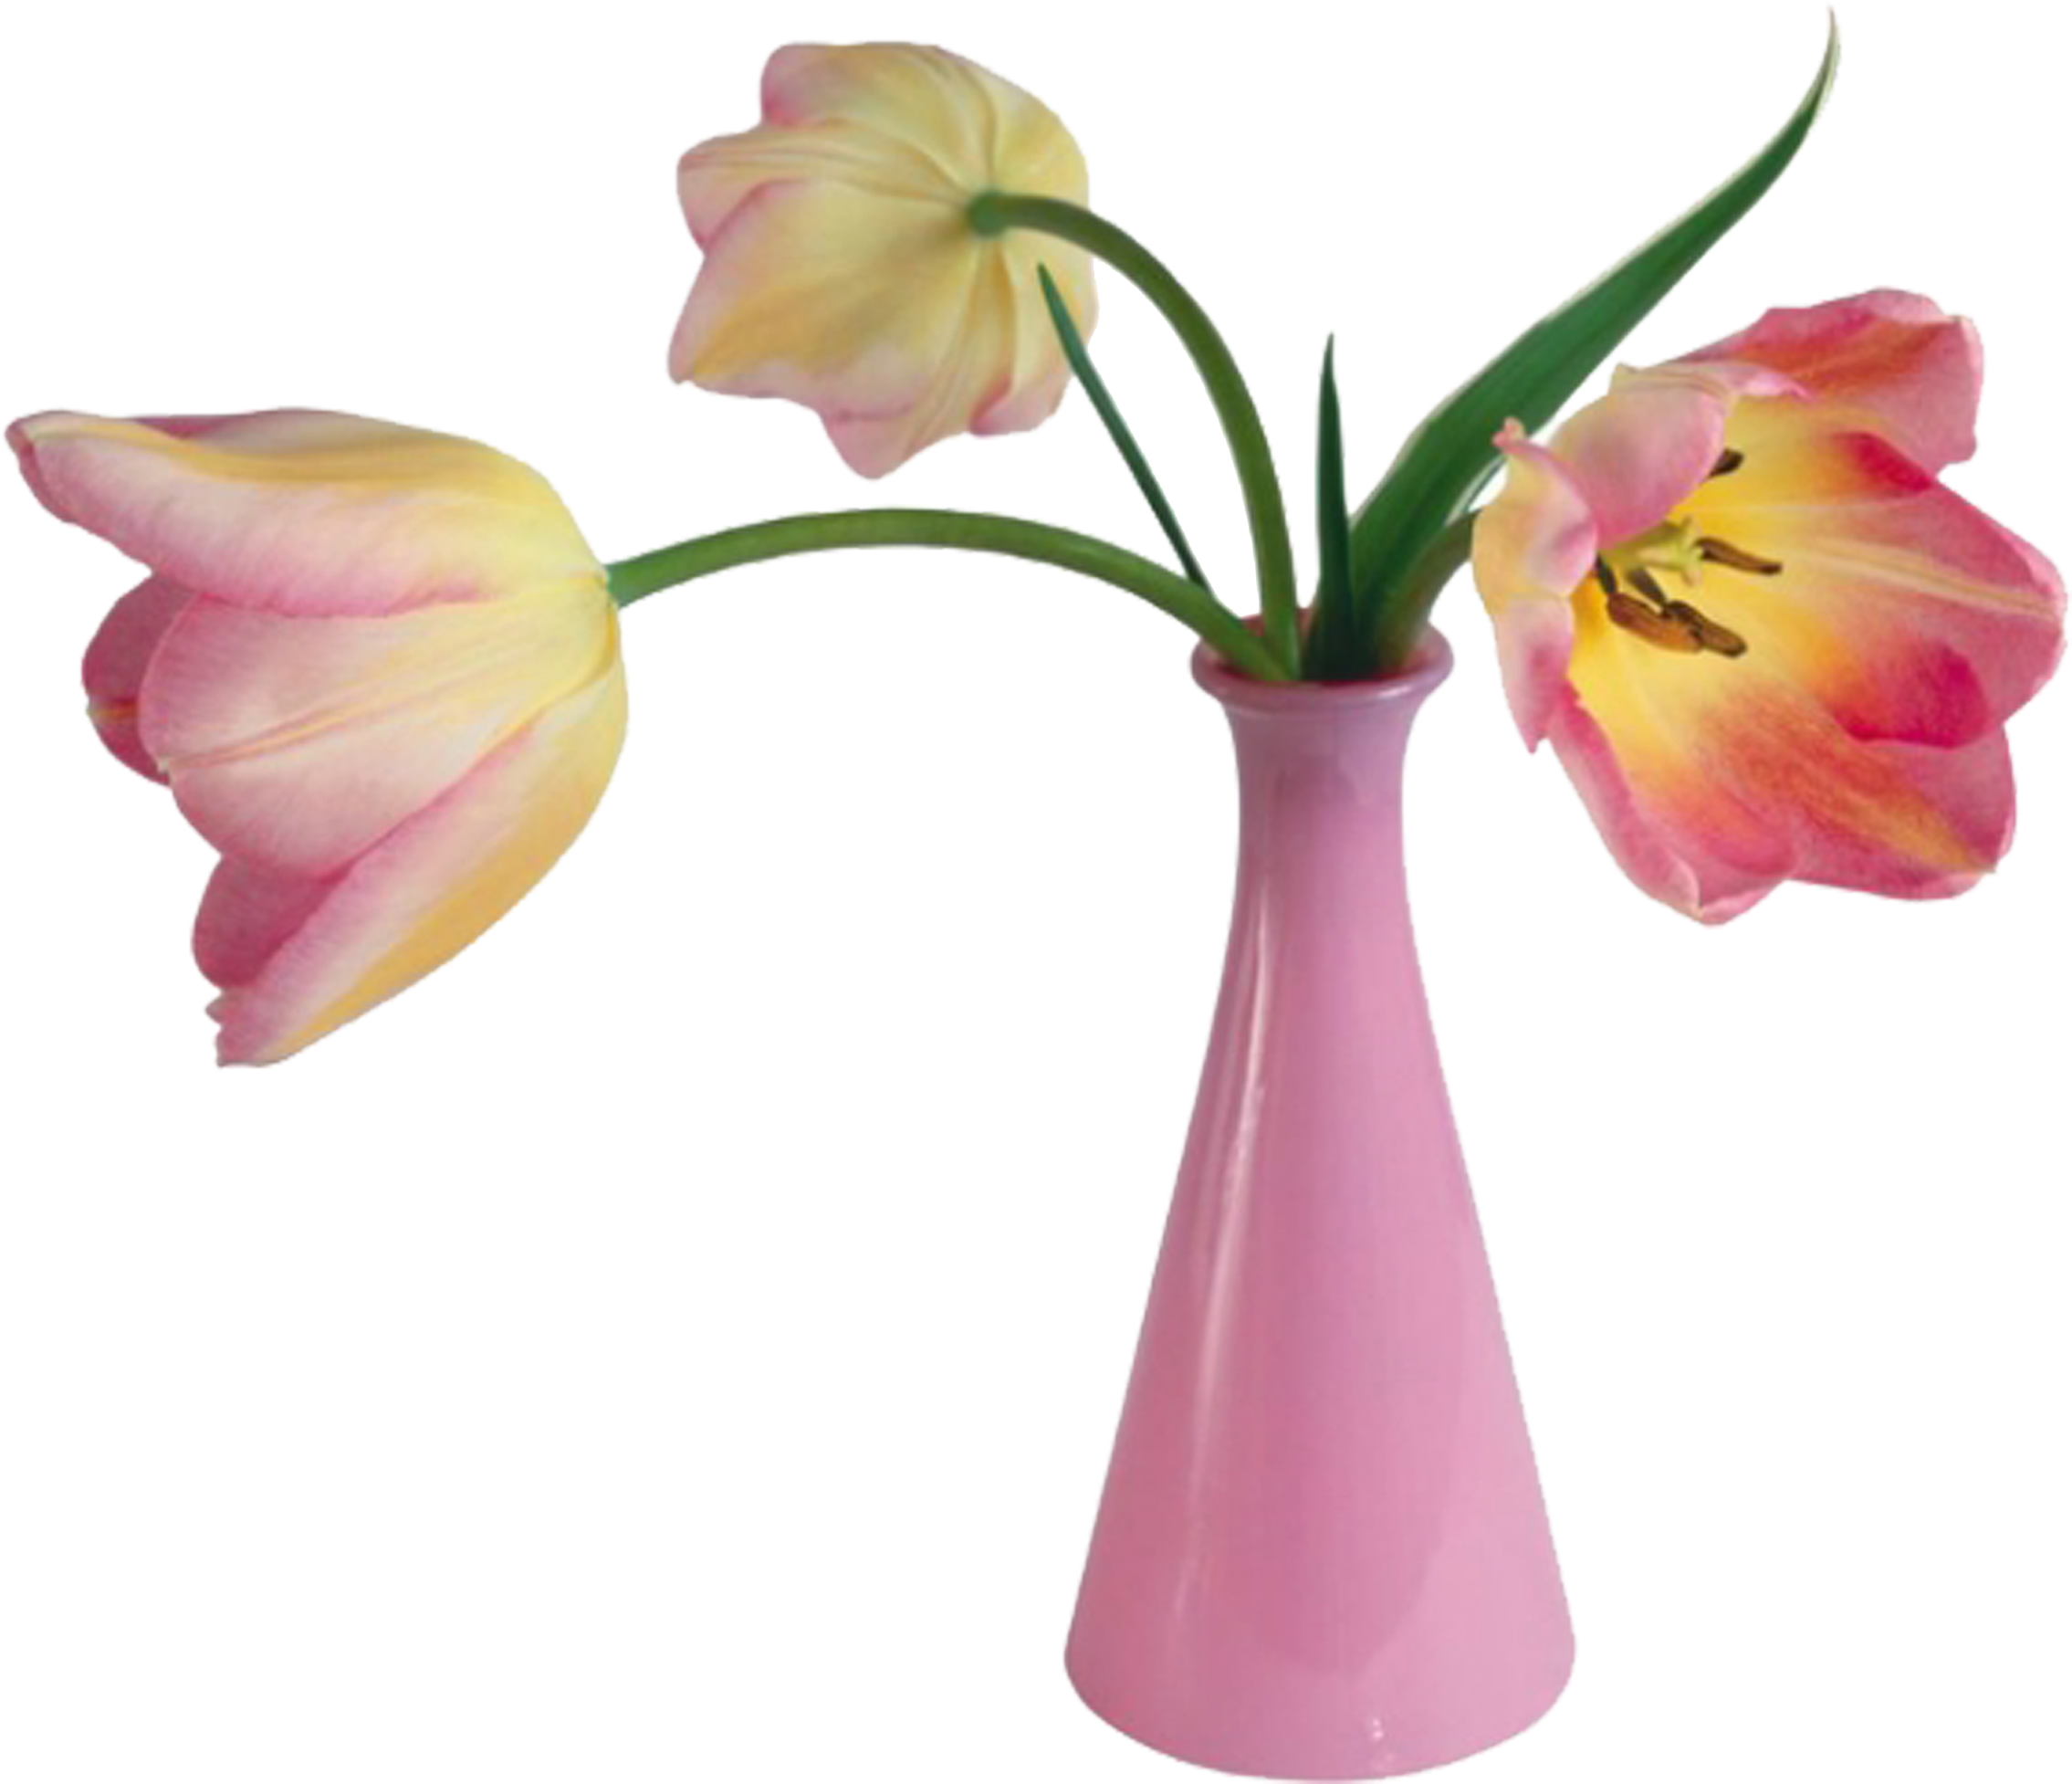 Valentines Day Flower Vase Clip Art - Happy Valentine's Day Card (2953x2953)